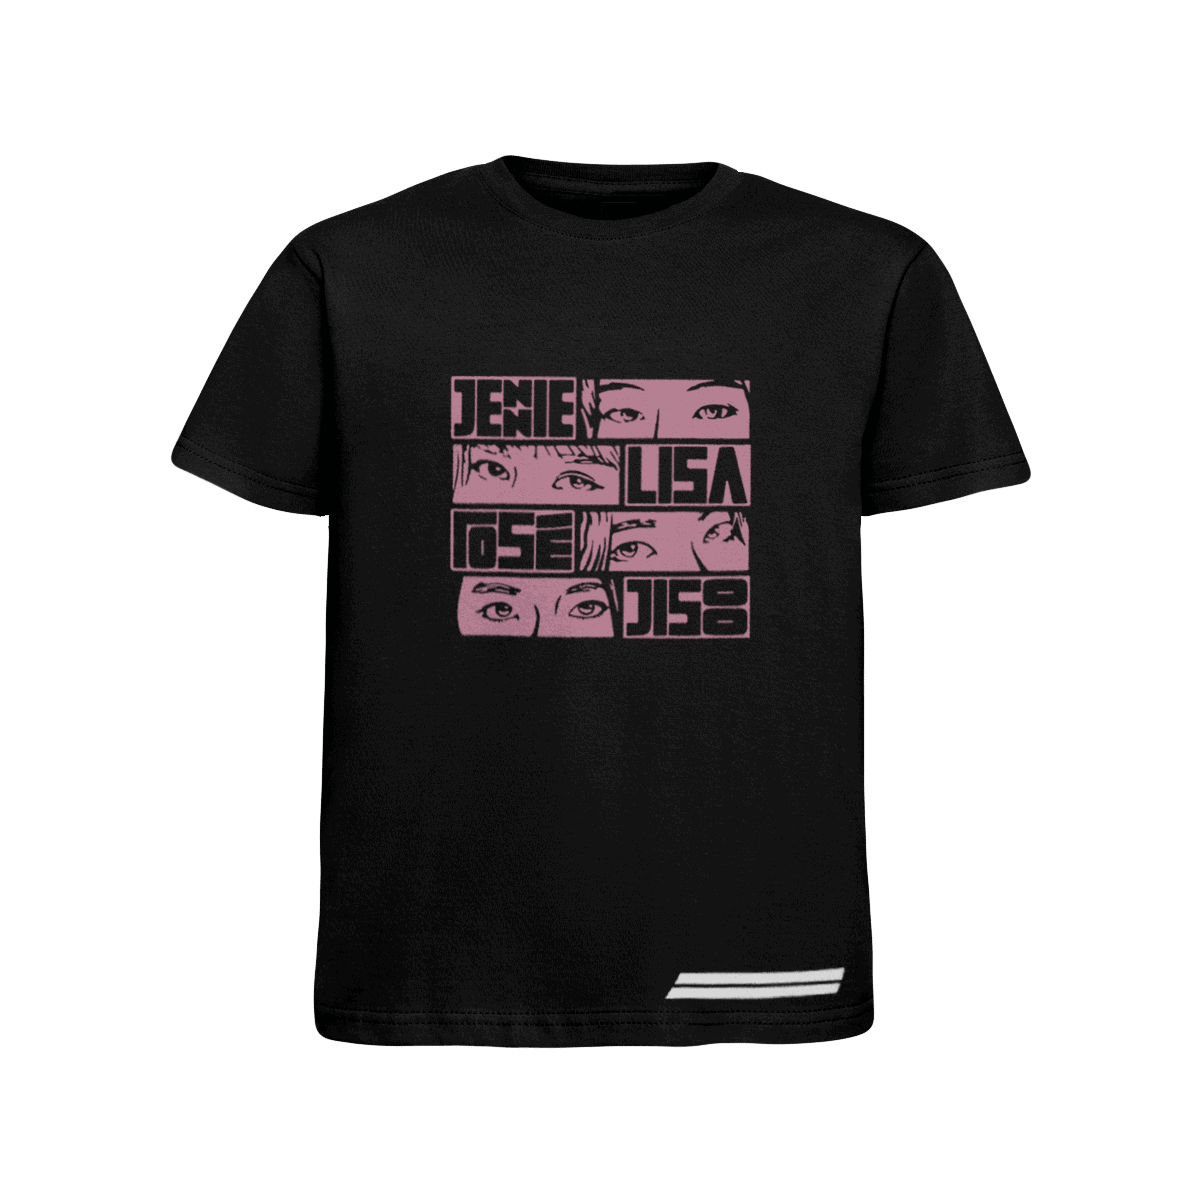 BLACKPINK Jennie Lisa Rosé Jisoo Kids T-Shirt, Black/Pink